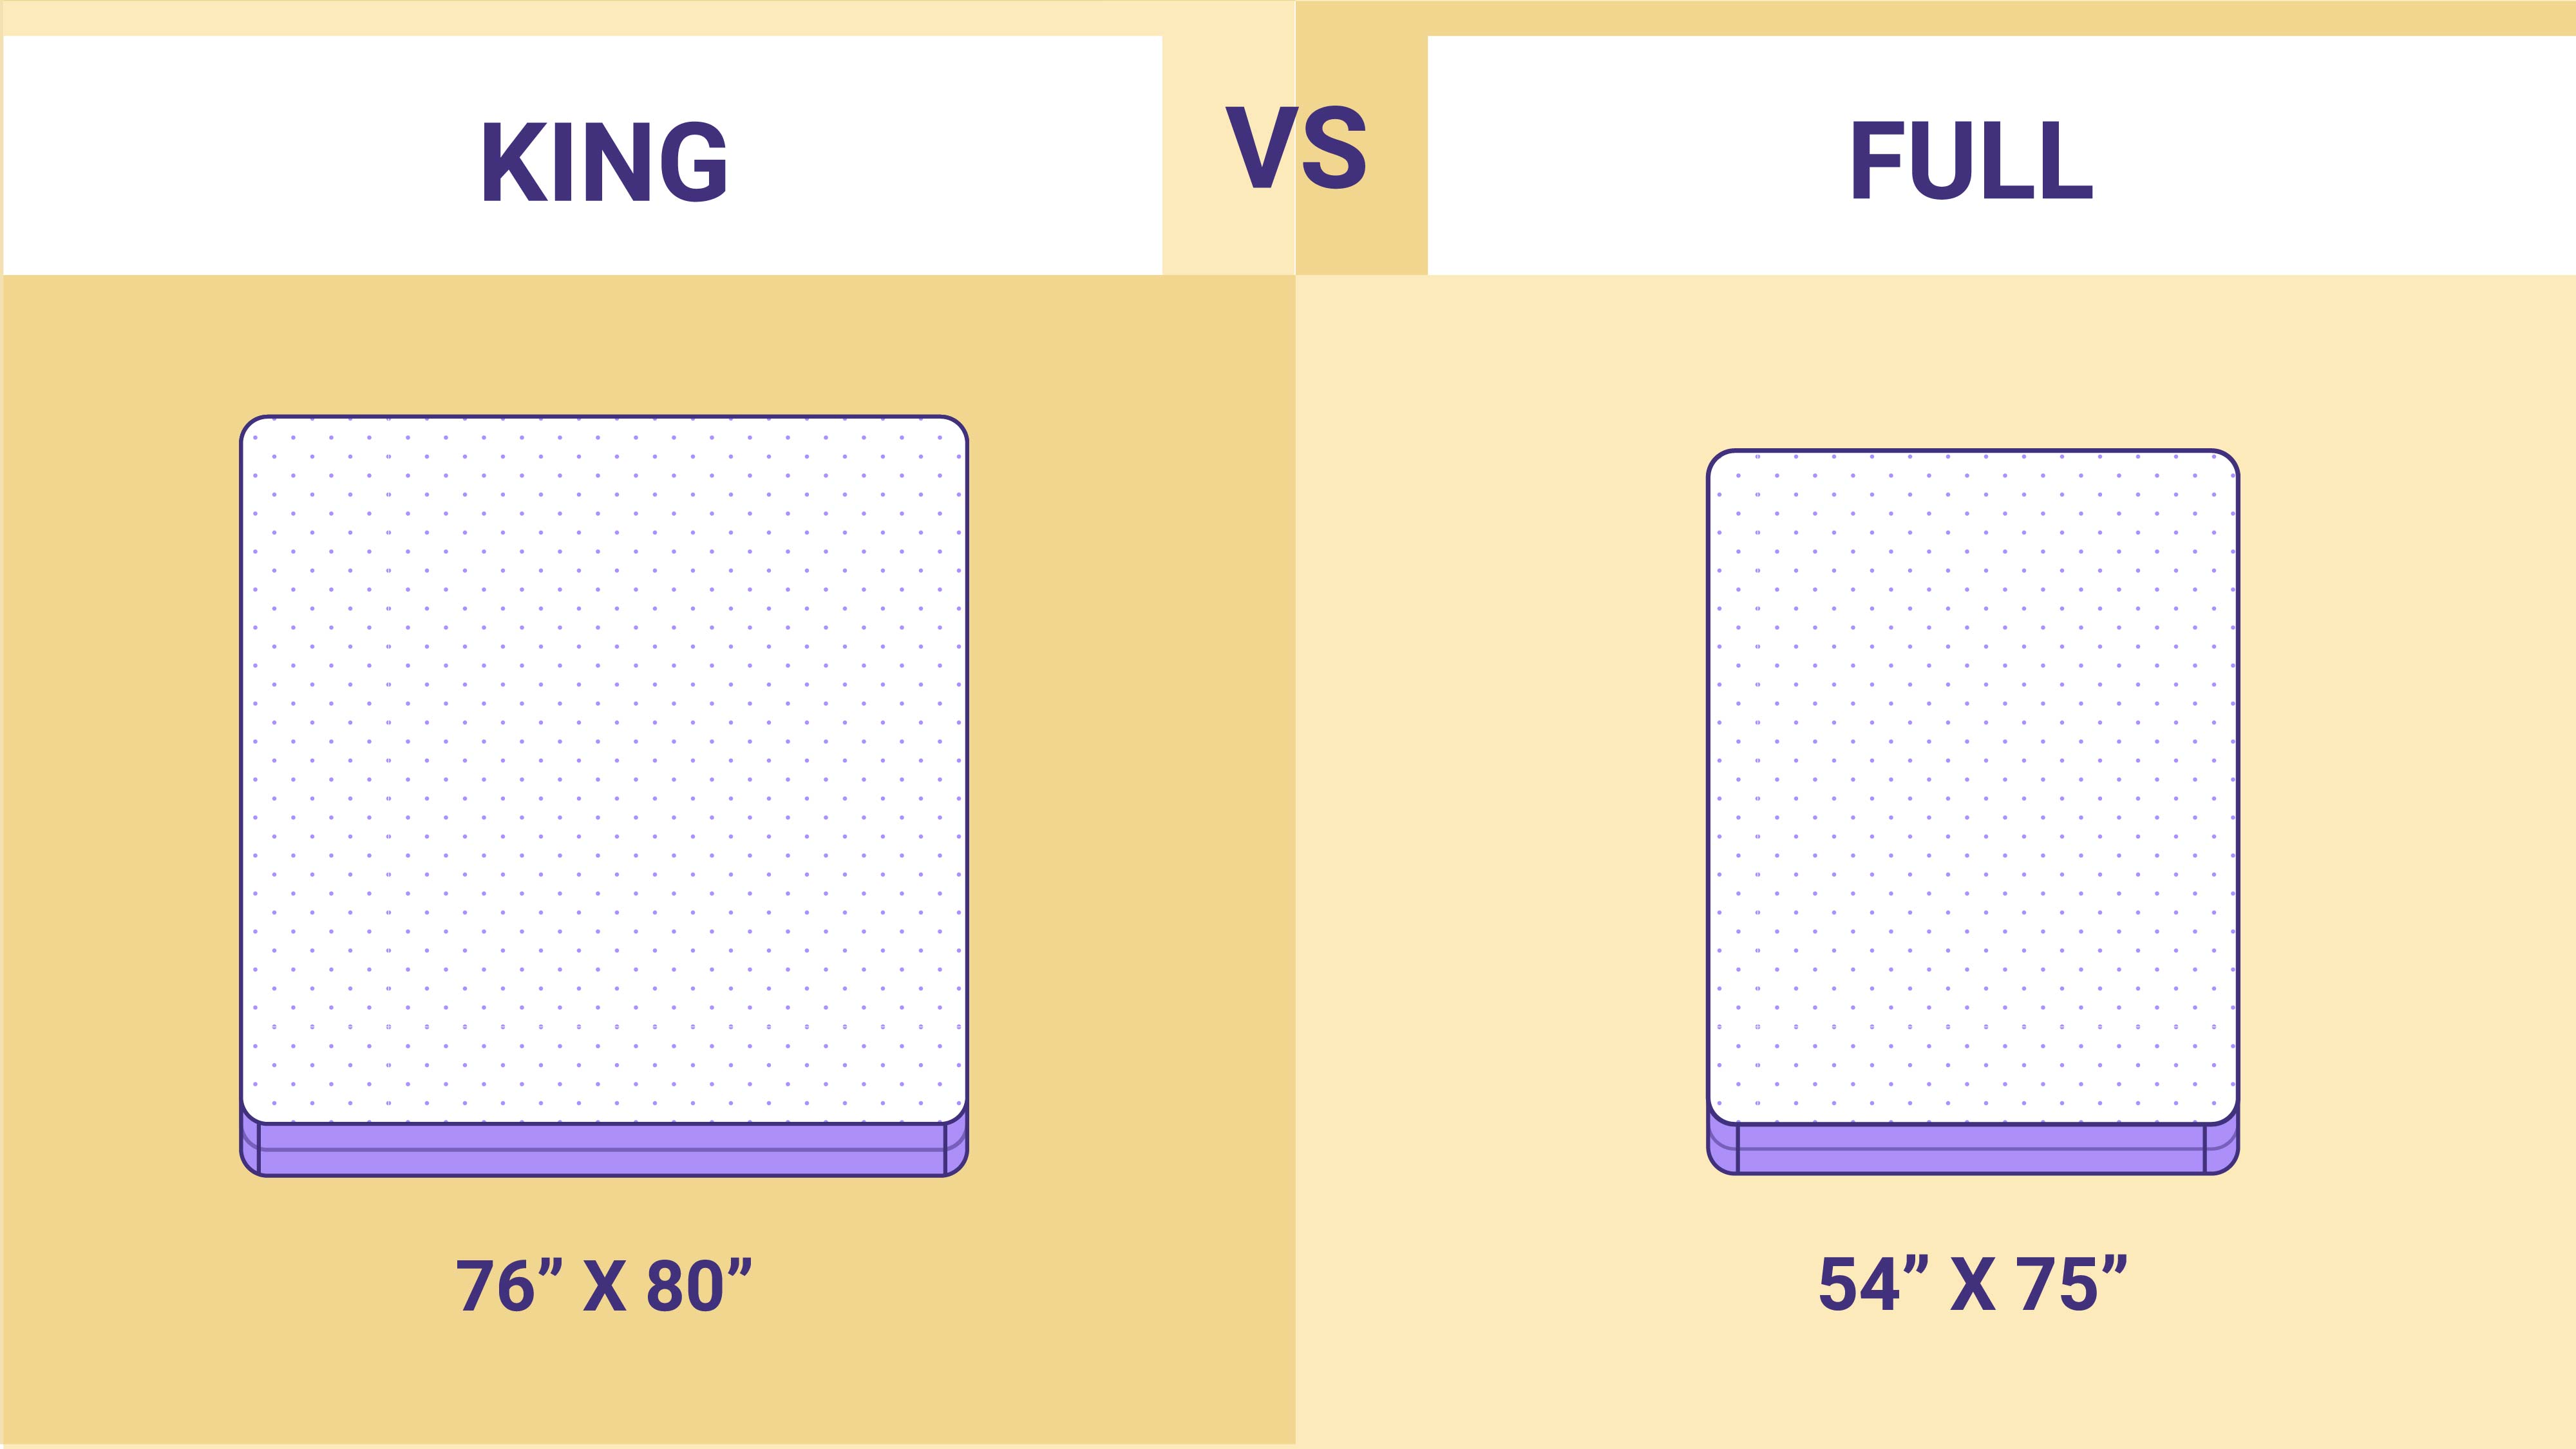 full size mattress vs king